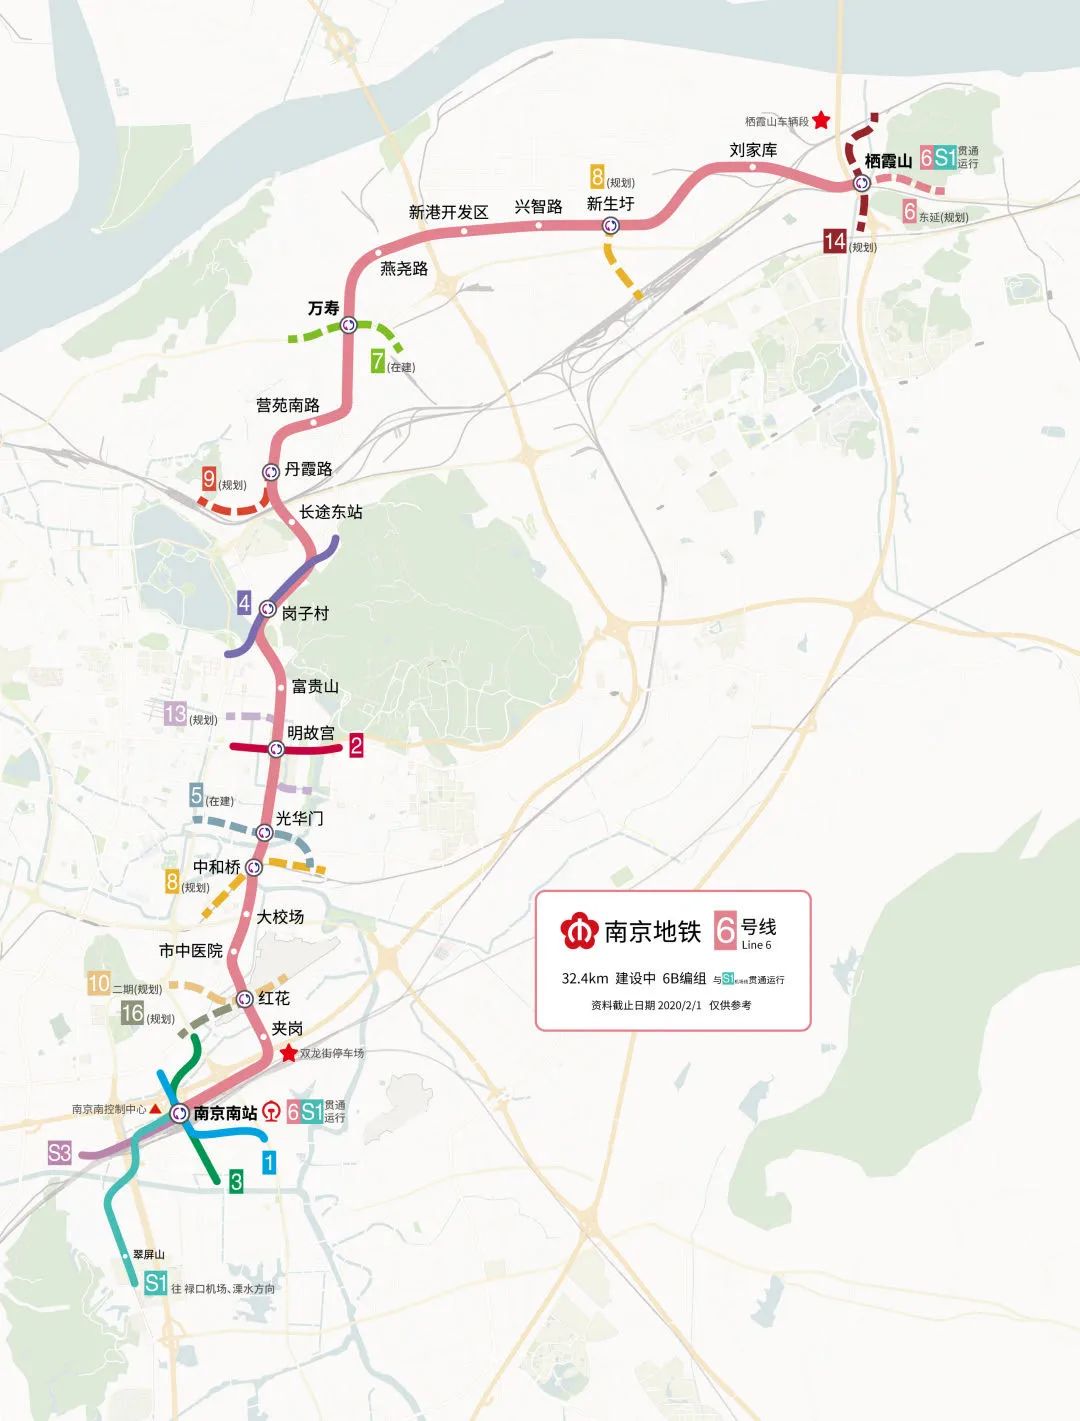 好消息!南京地铁s1,s7号线"大站快车"来了!